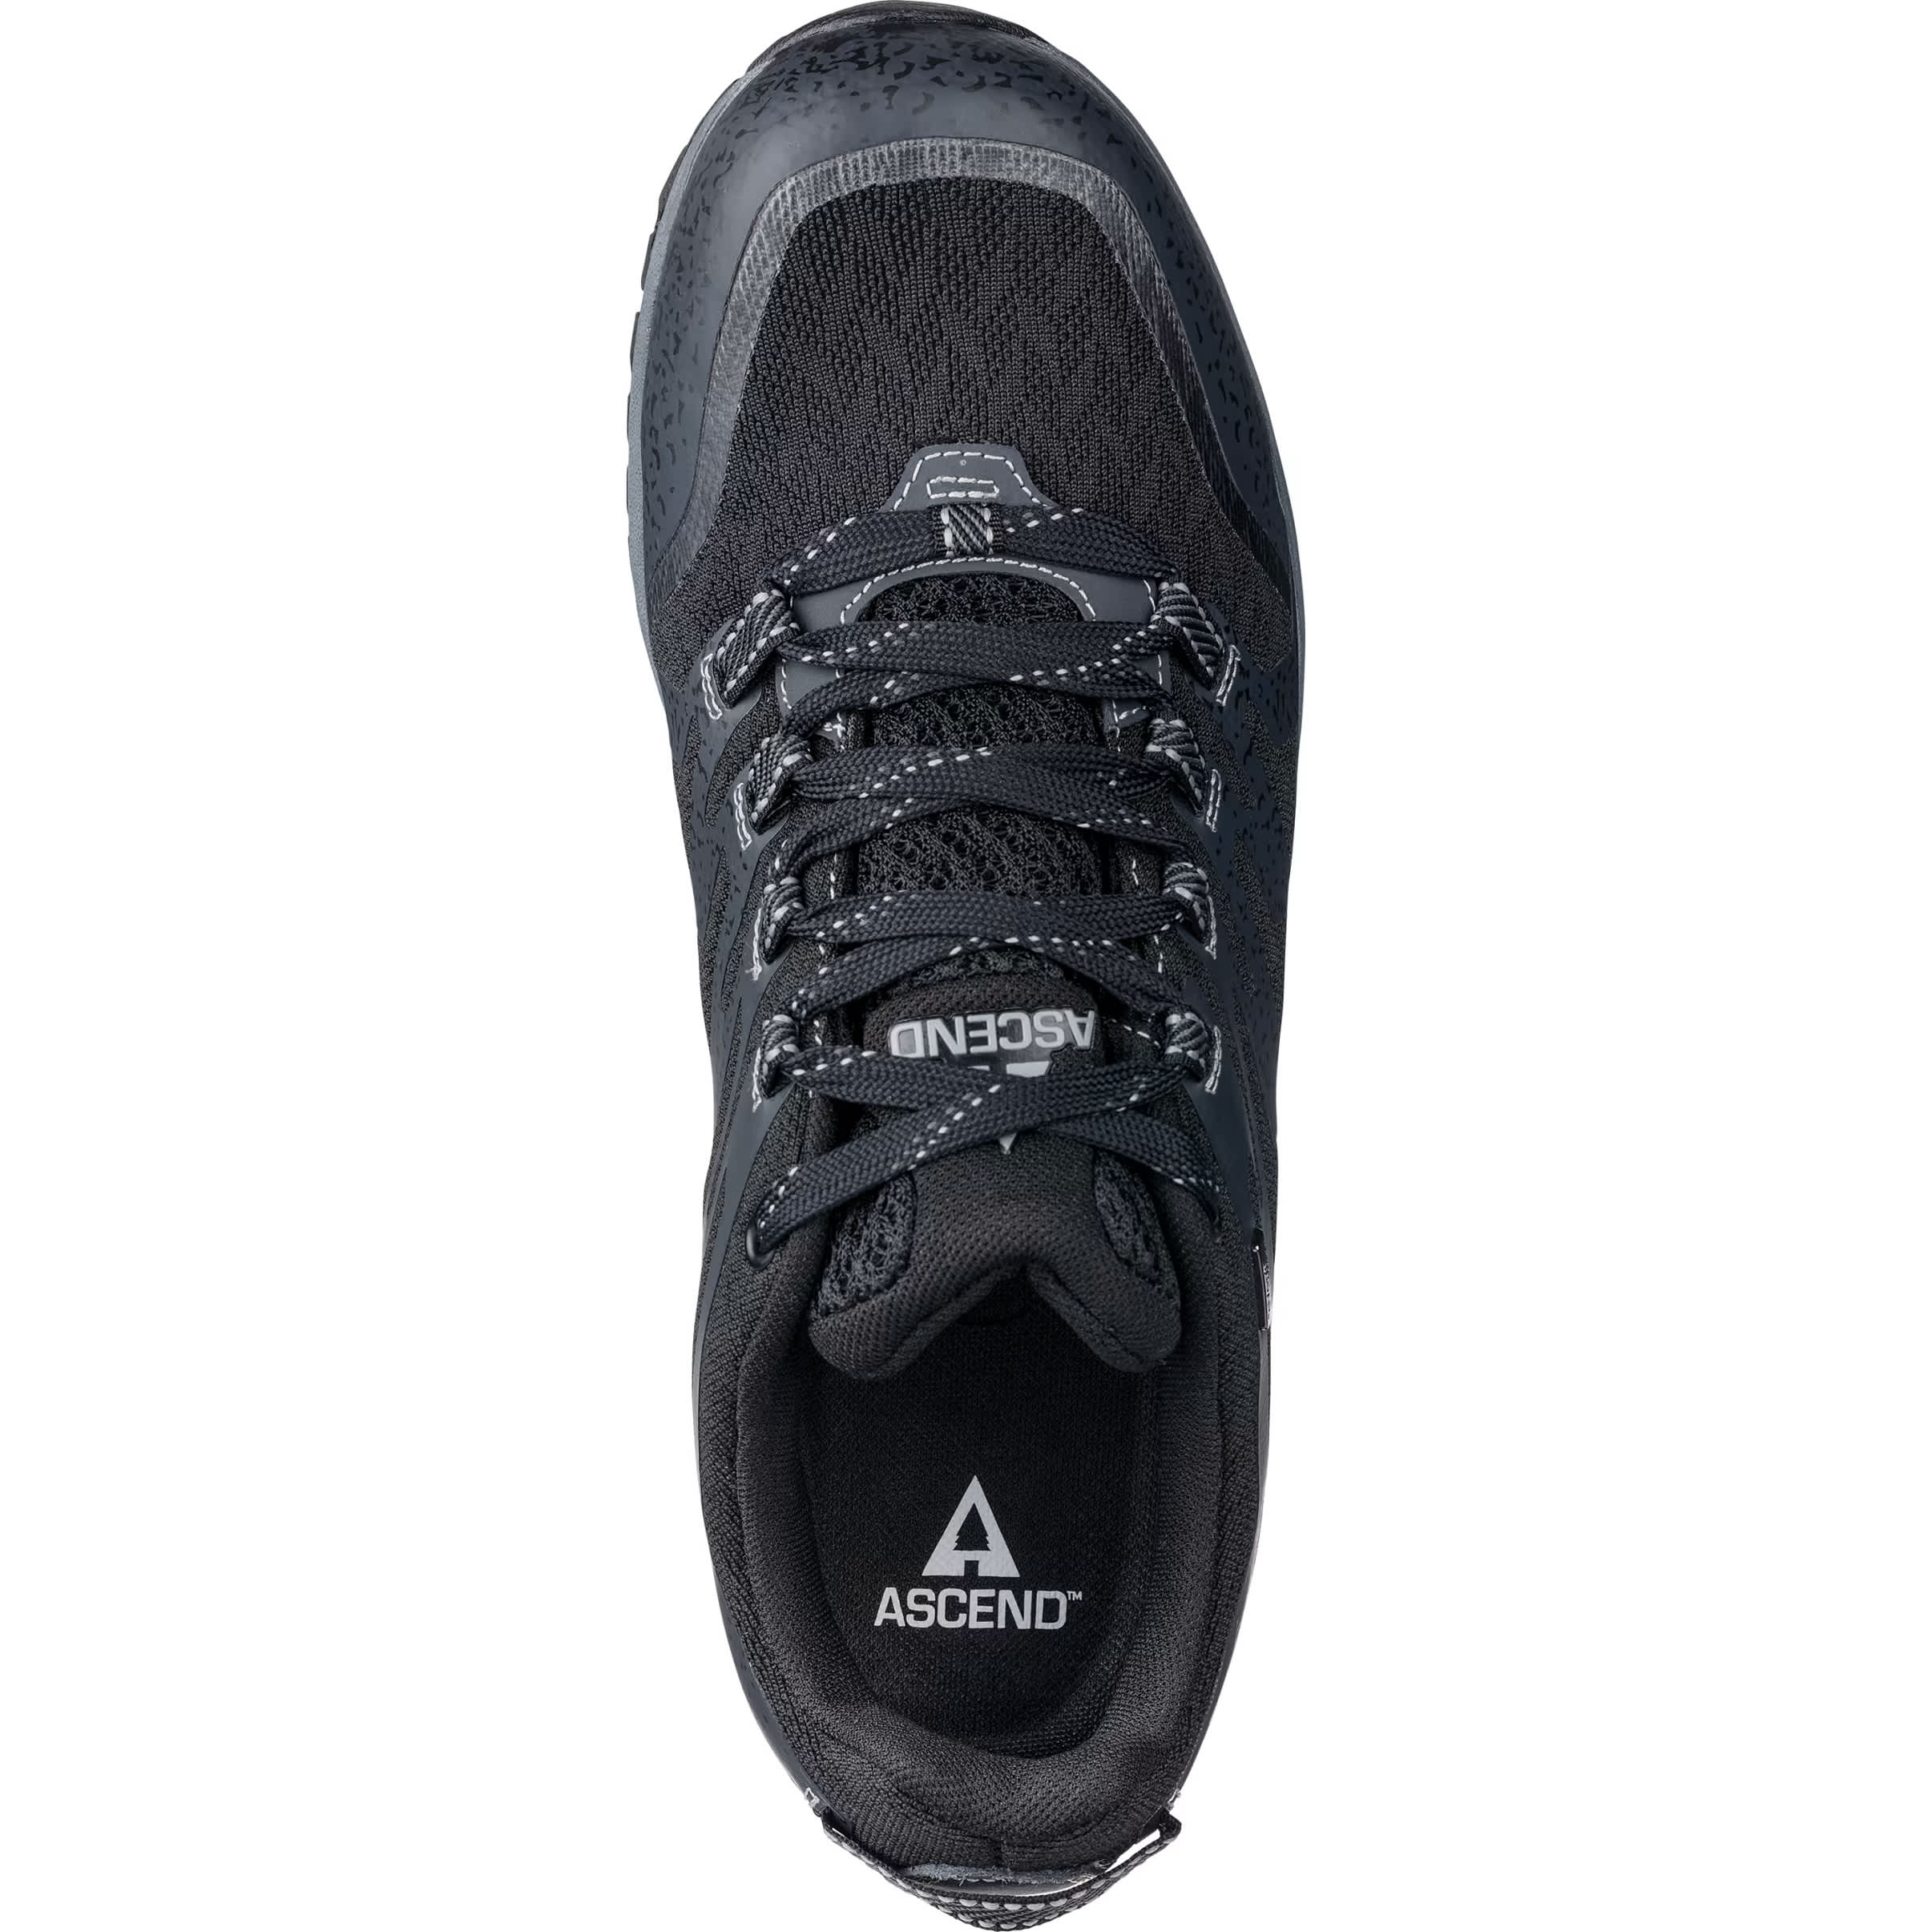 Ascend® Men’s Approach II Low Waterproof Hiking Shoe